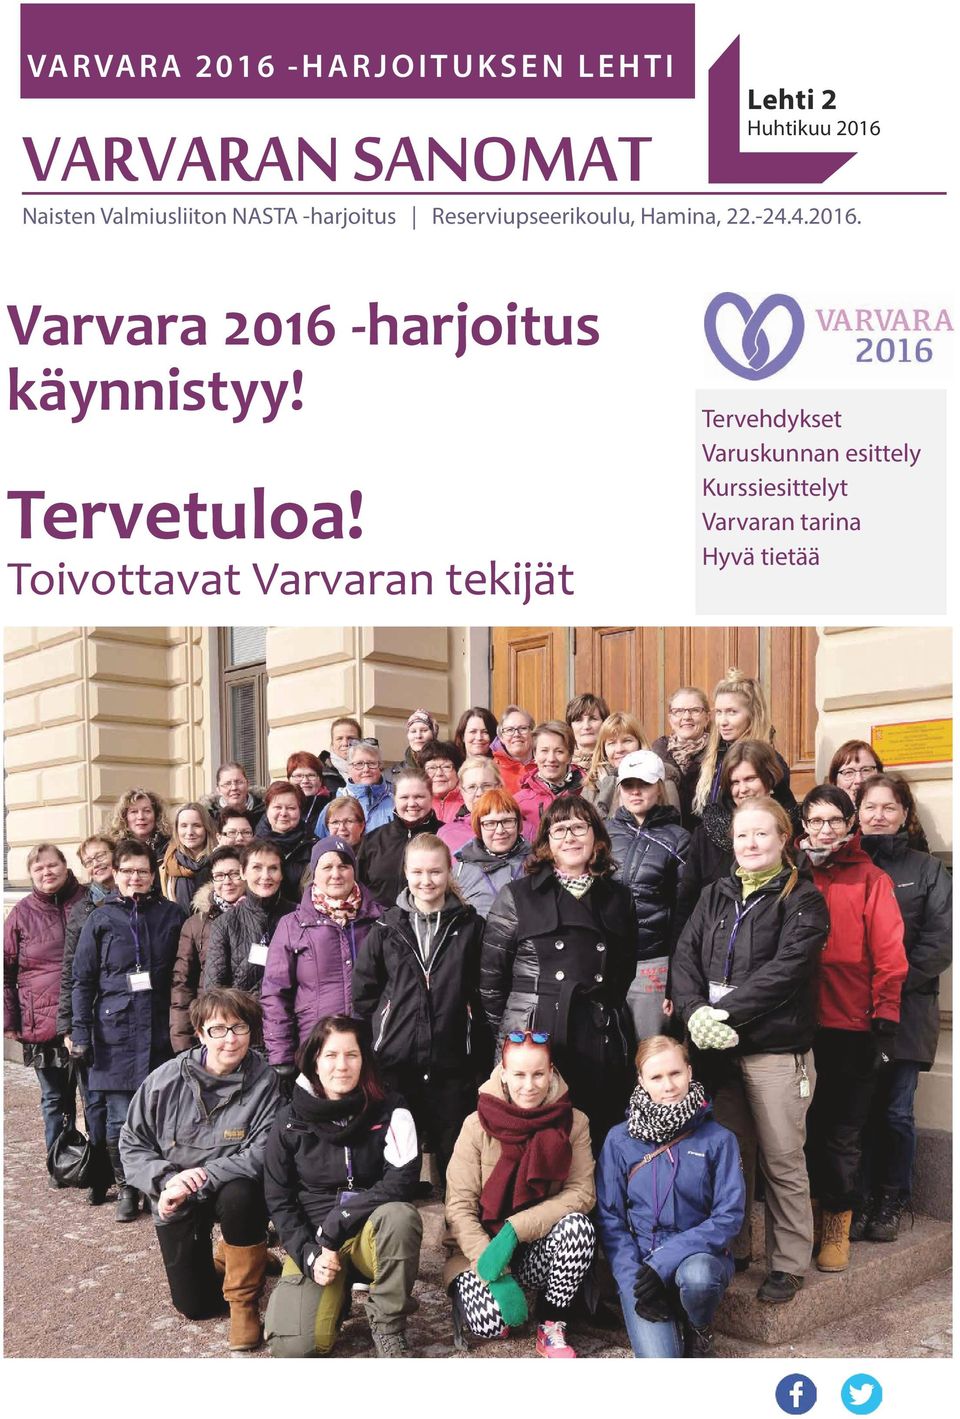 4.2016. Varvara 2016 -harjoitus käynnistyy! Tervetuloa!